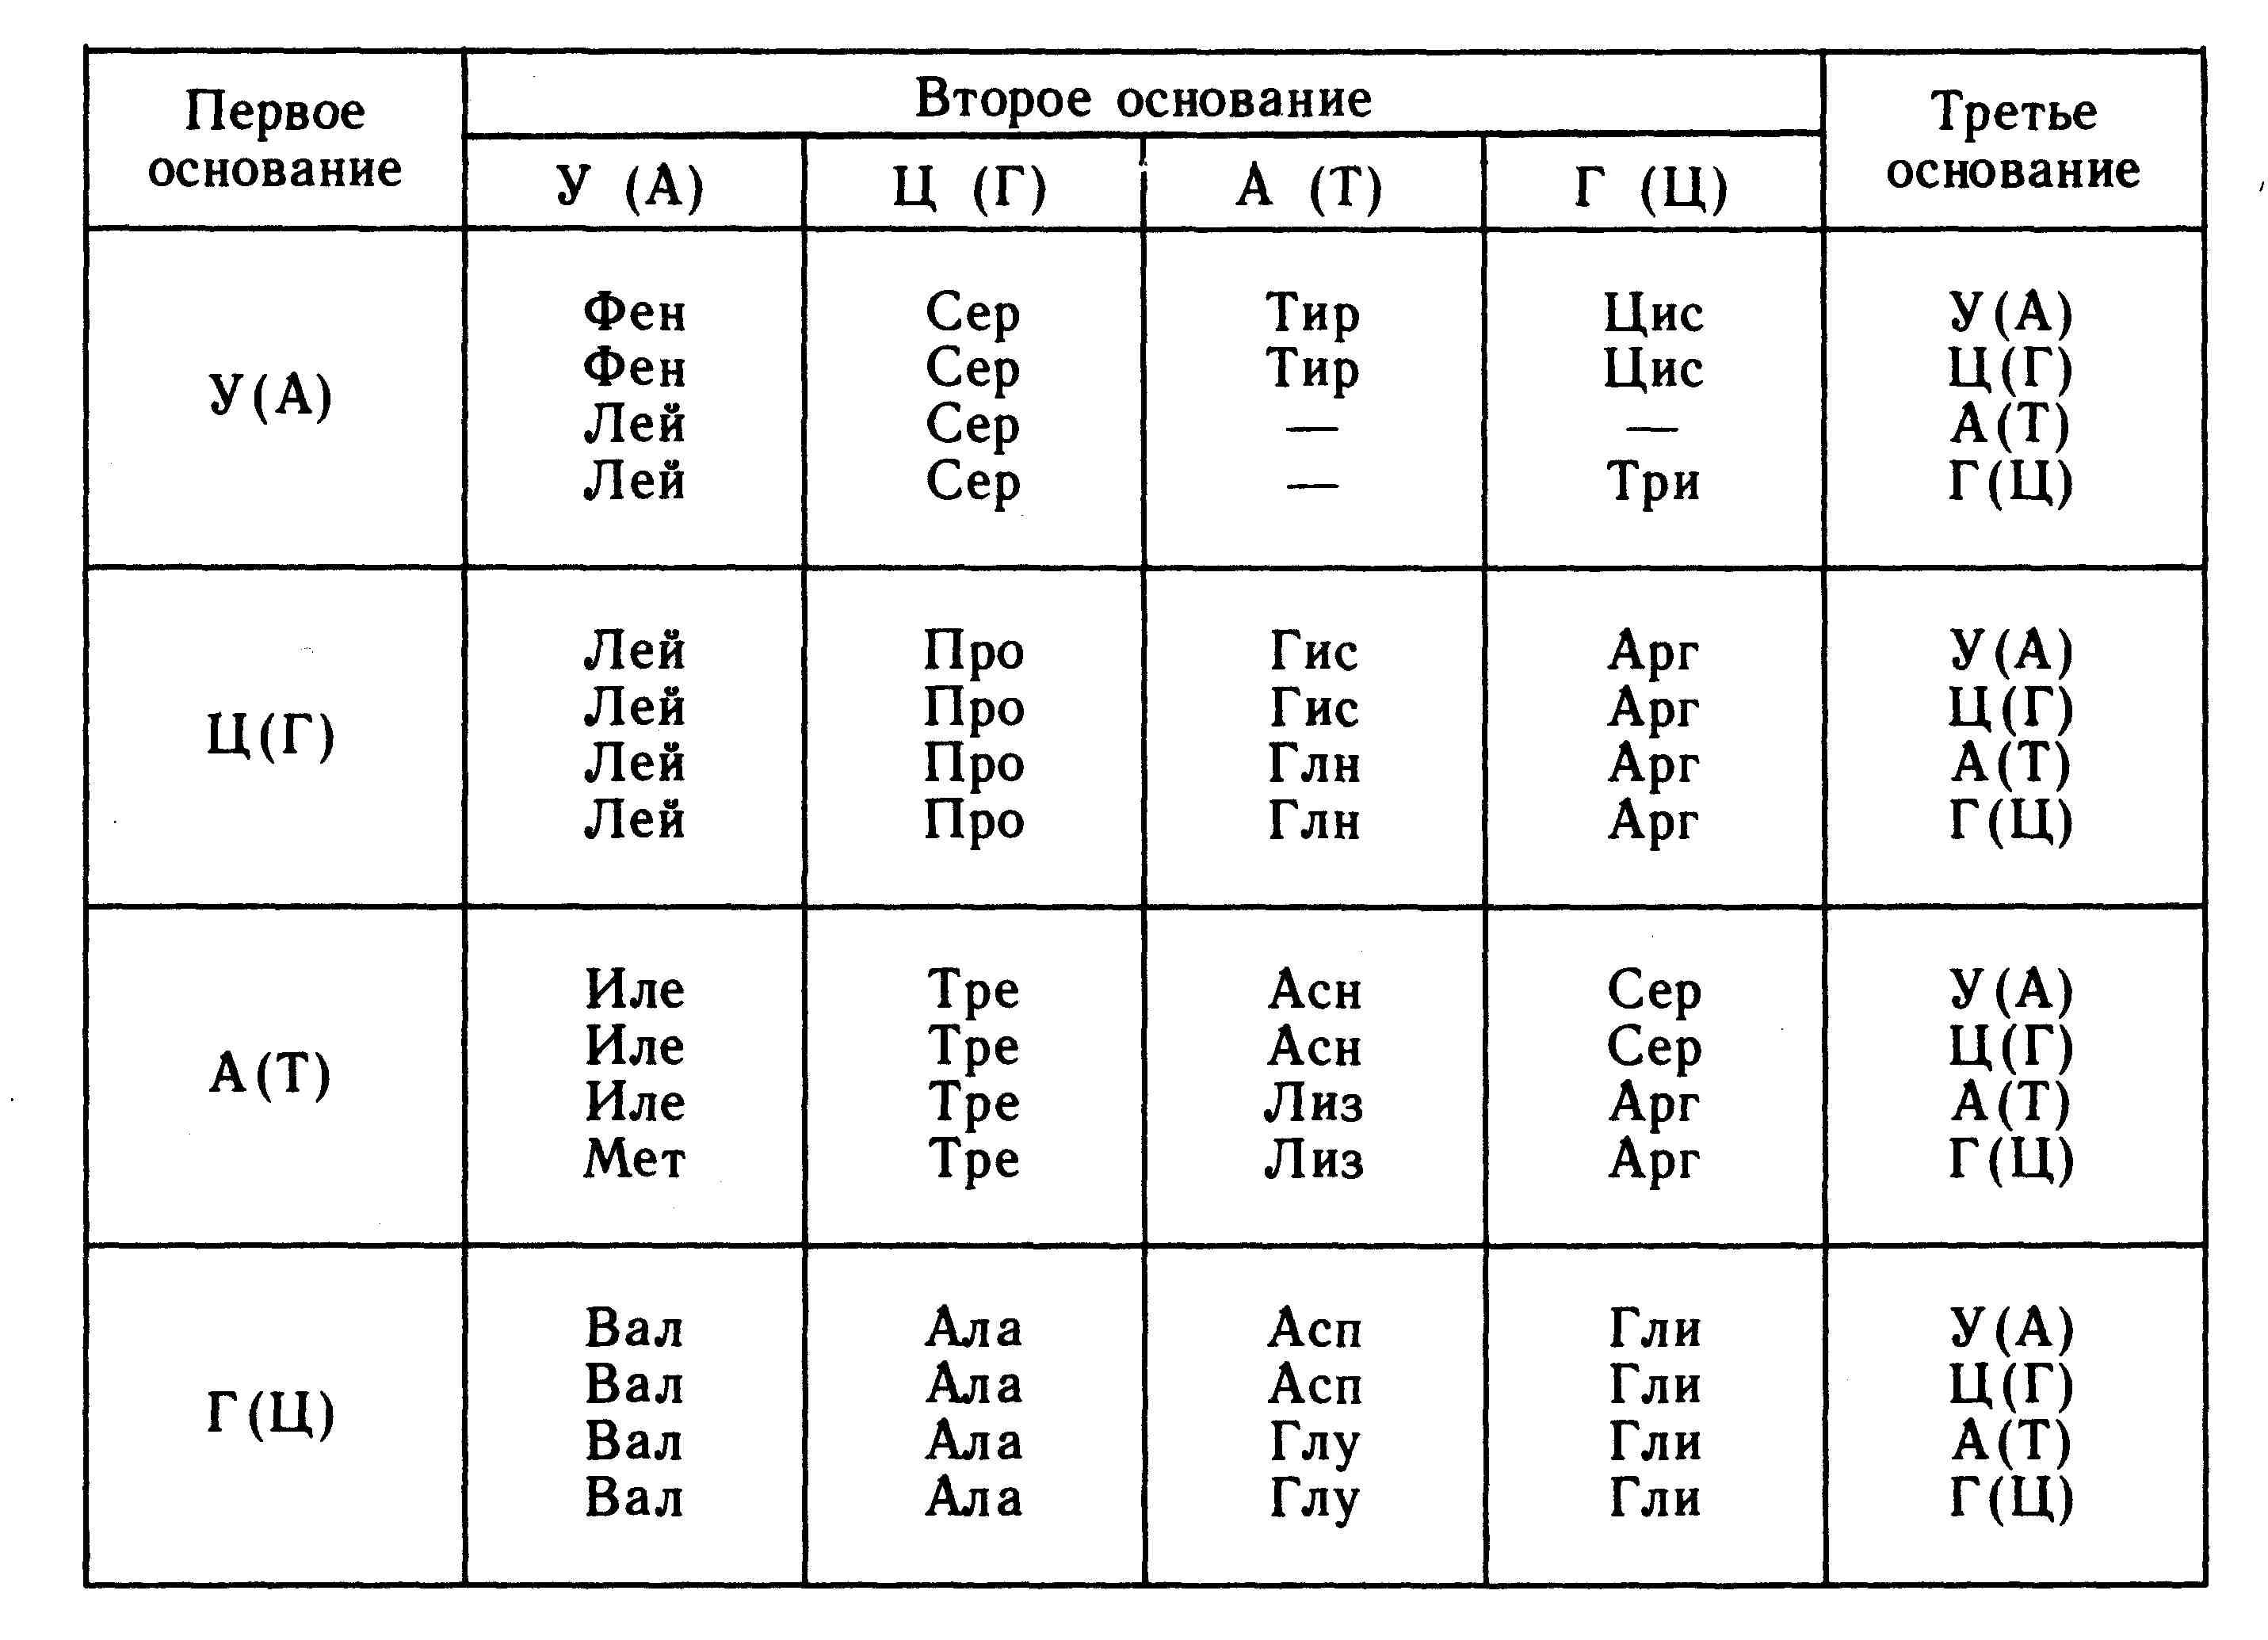 Генетический код триплет нуклеотидов. Таблица генетического кода ДНК И РНК. Аминокислоты ДНК И РНК таблица. Таблица РНК аминокислот. Таблица триплетов генетического кода и РНК.